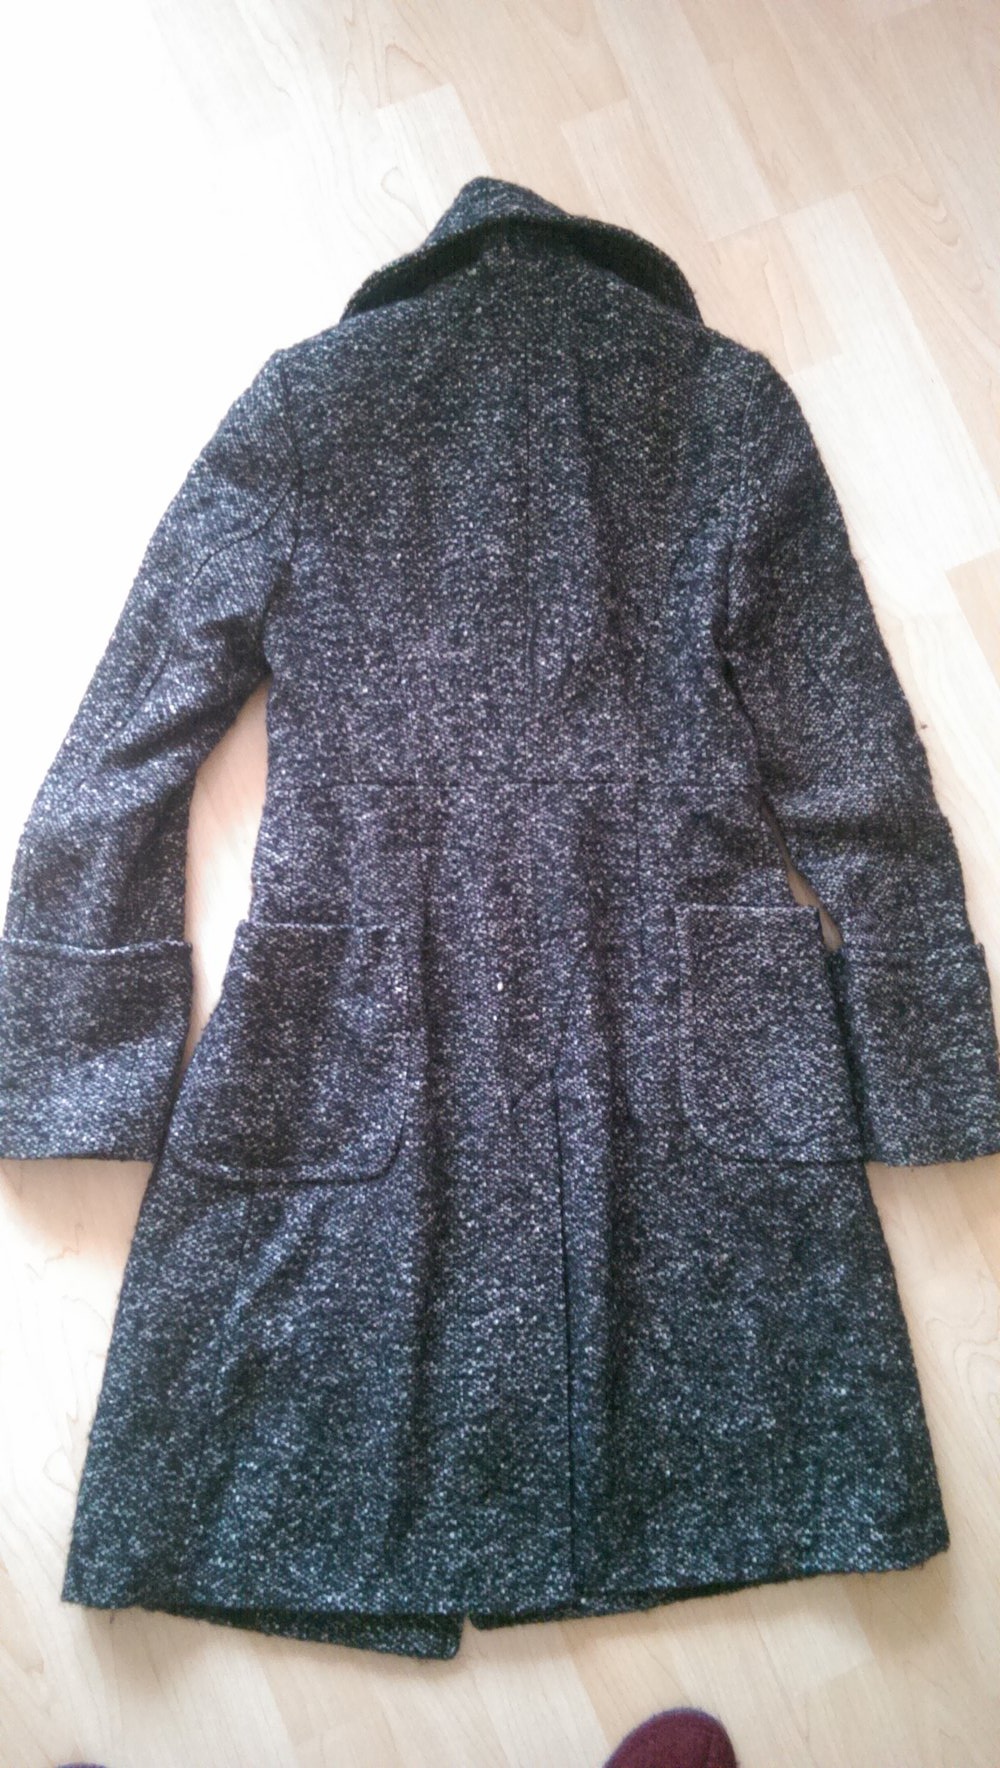 Benetton - Mantel aus Wolle in schwarz/grau, Größe 32-34, XS